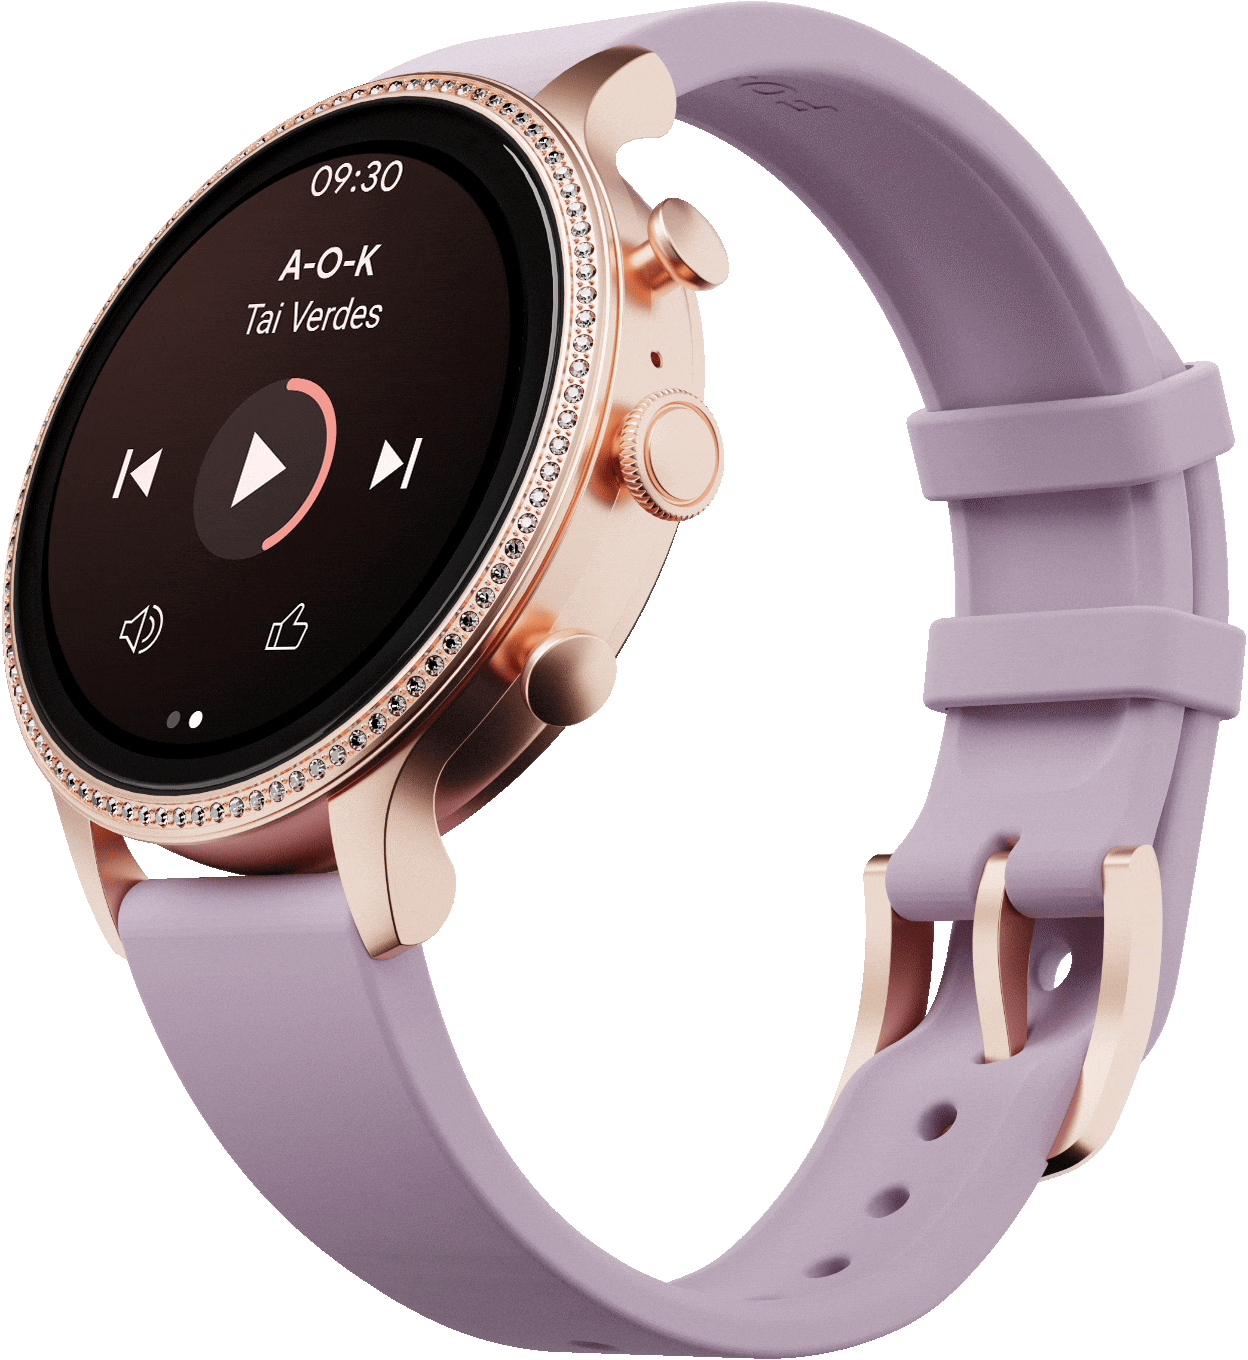 Une montre connectée Gen 6 avec un bracelet en silicone violet affichant sur le cadran une chanson en cours de lecture et des icônes de notes de musique.